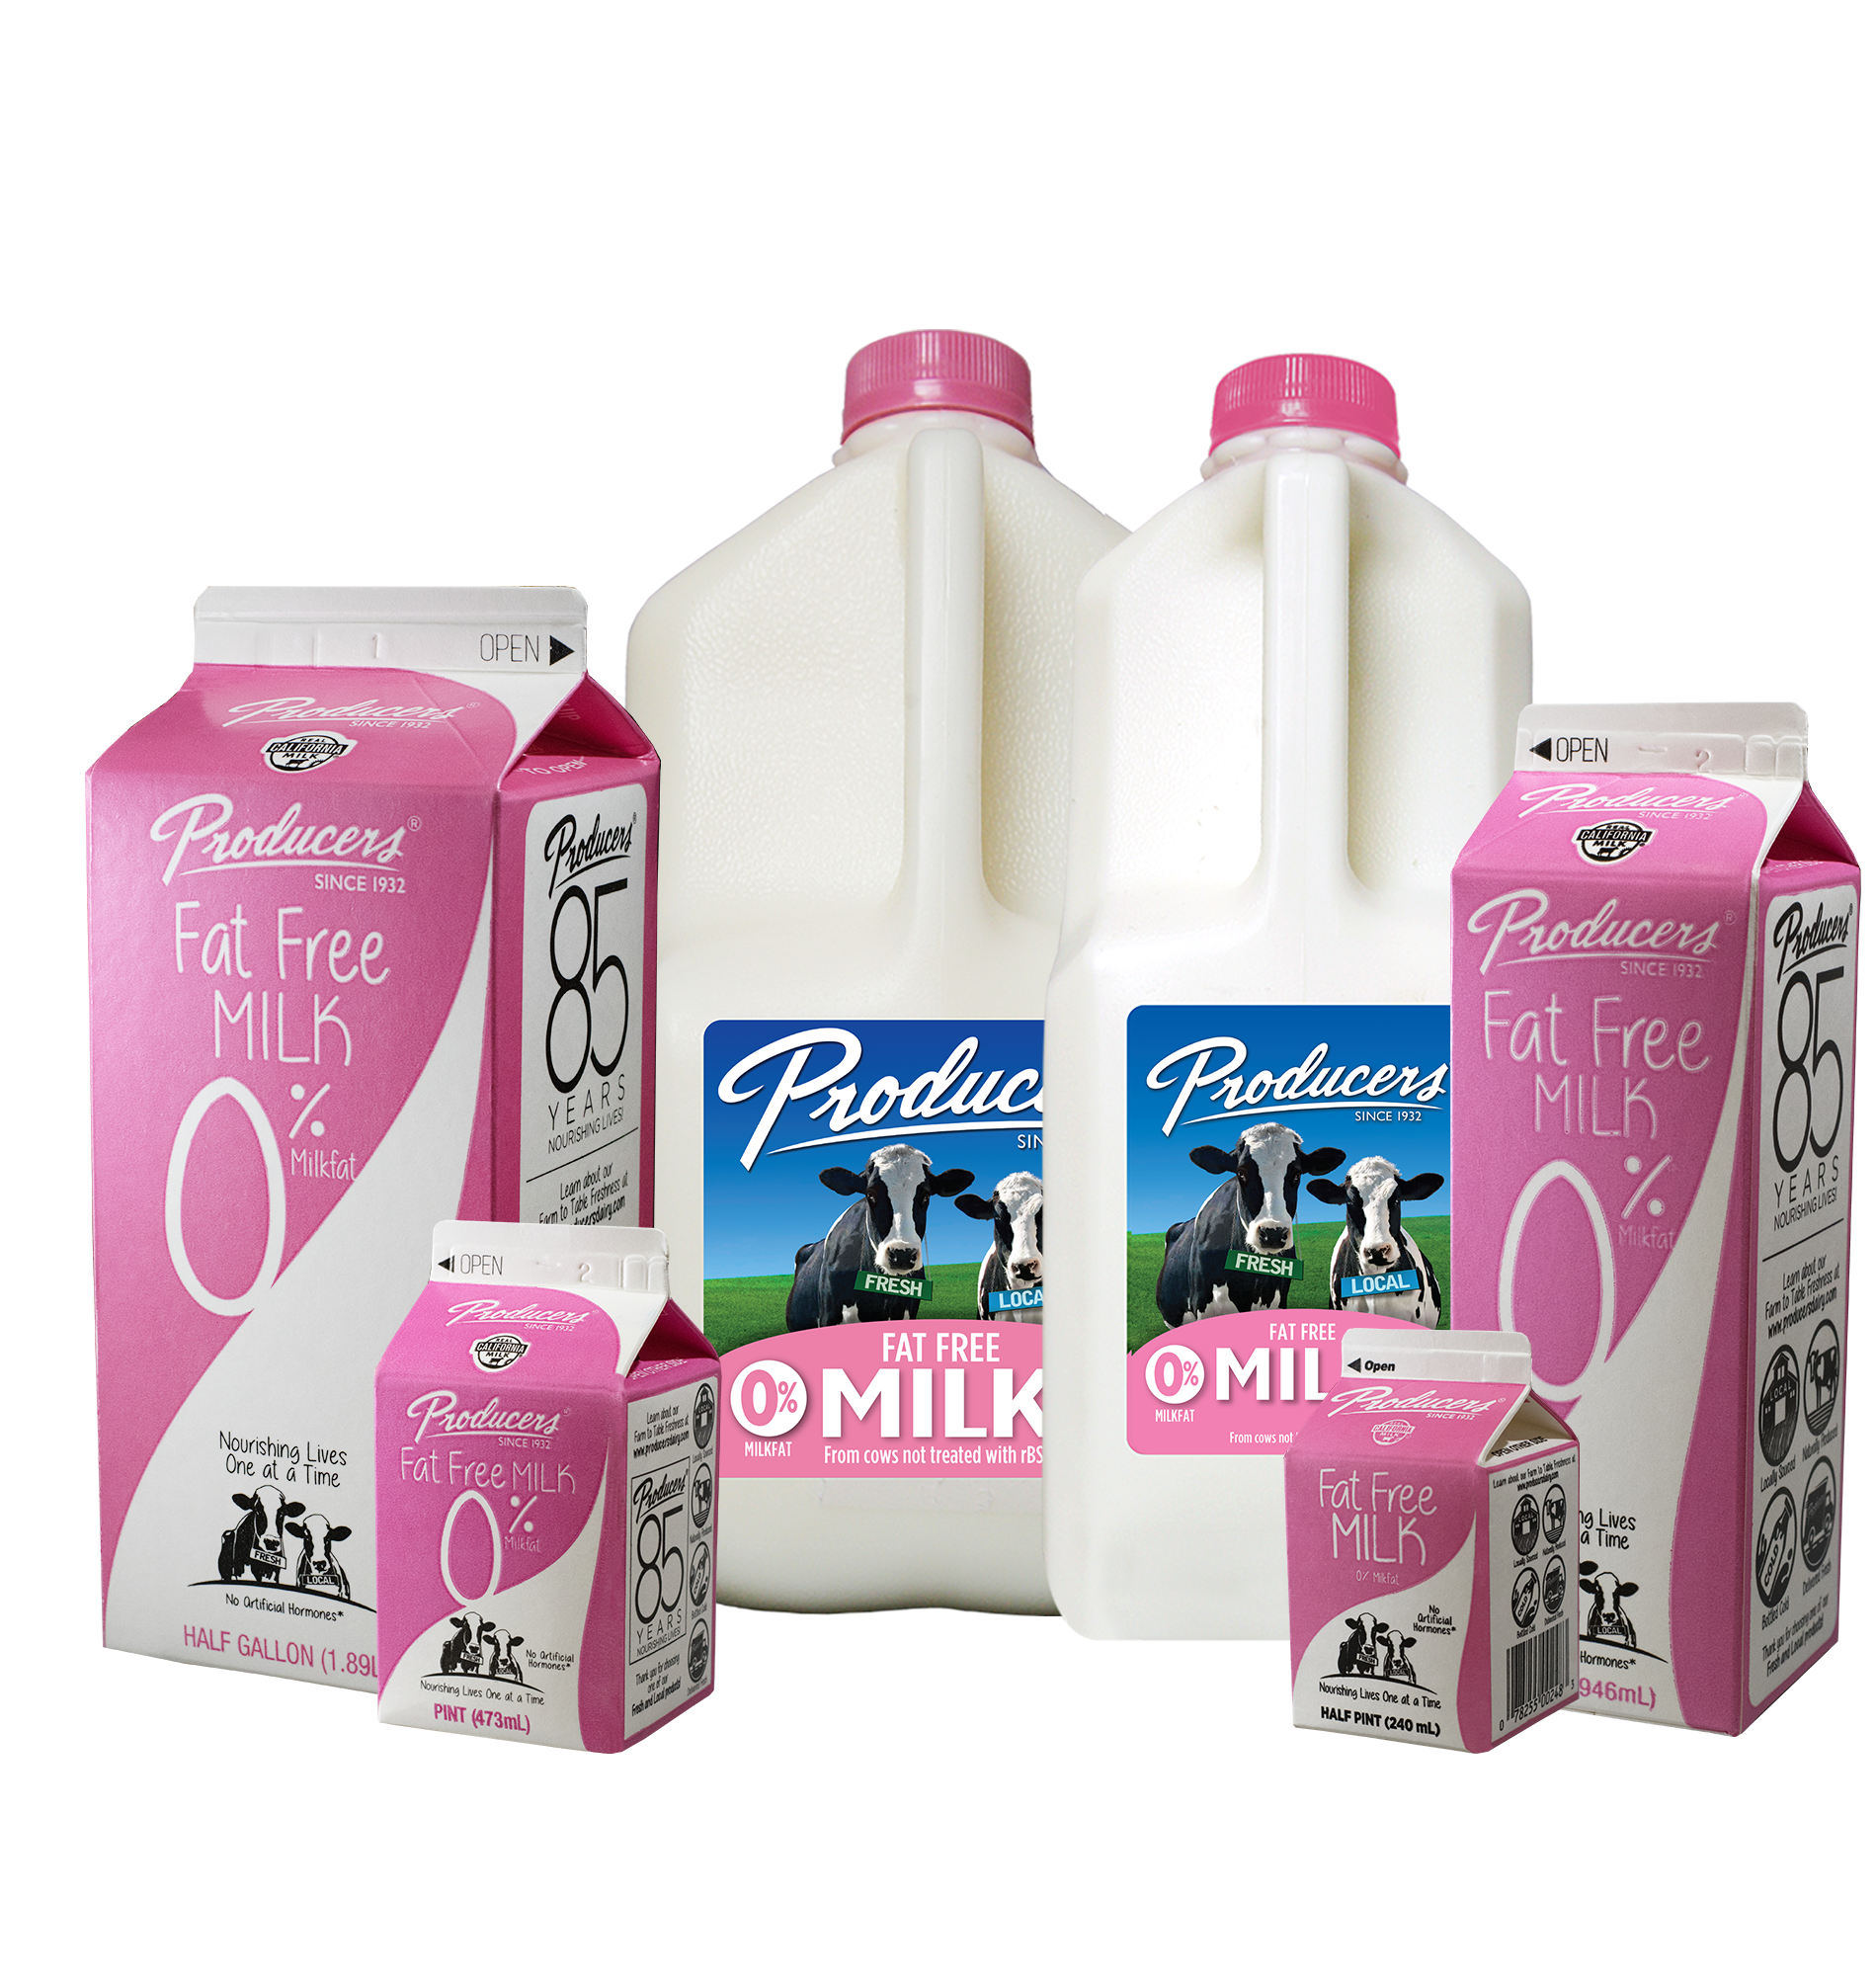 Half & Half – Producers Dairy